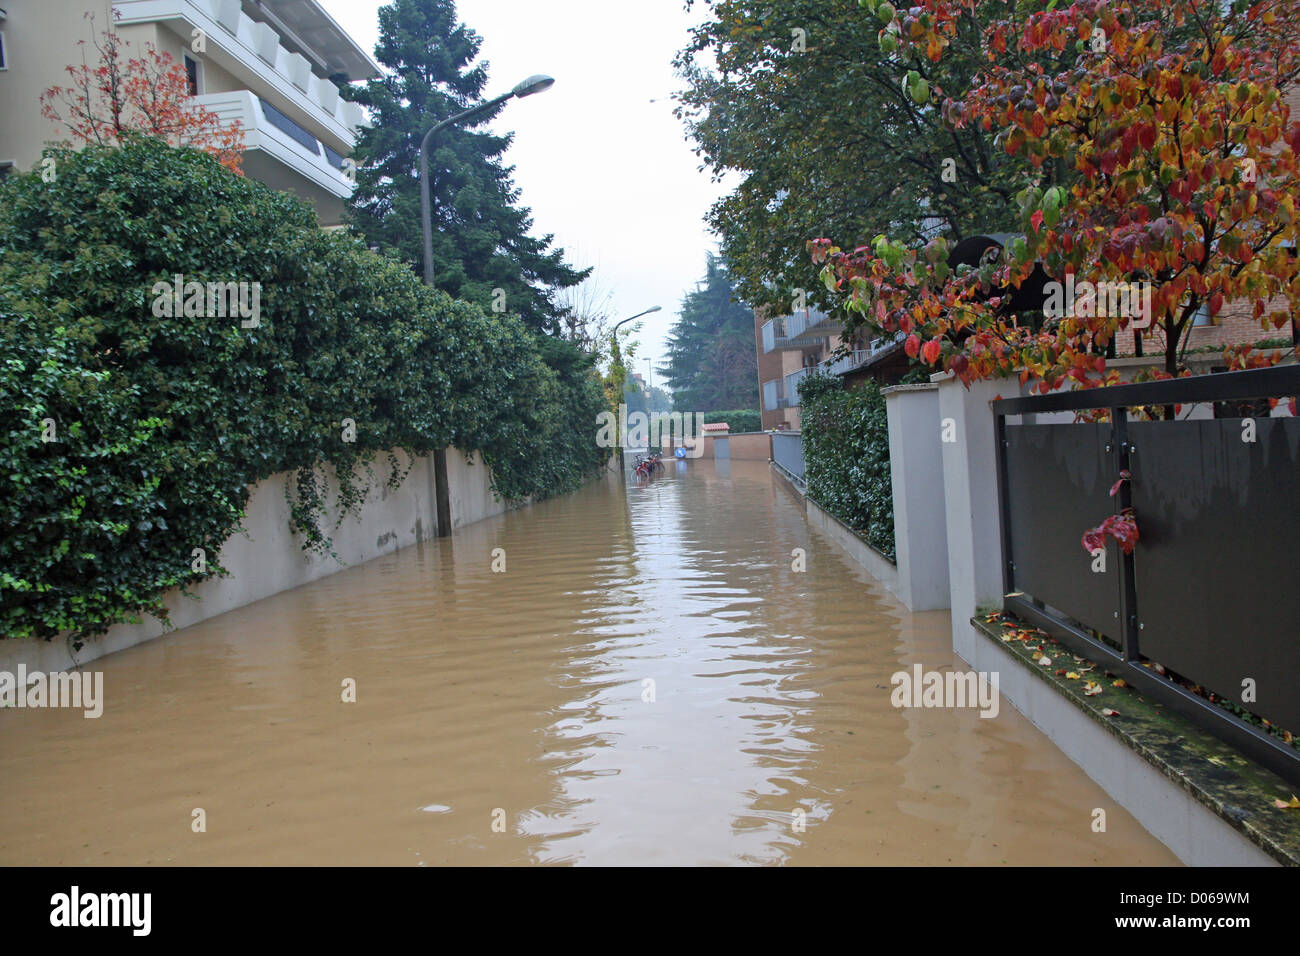 Route étroite complètement inondé pendant une averse dans la ville Banque D'Images